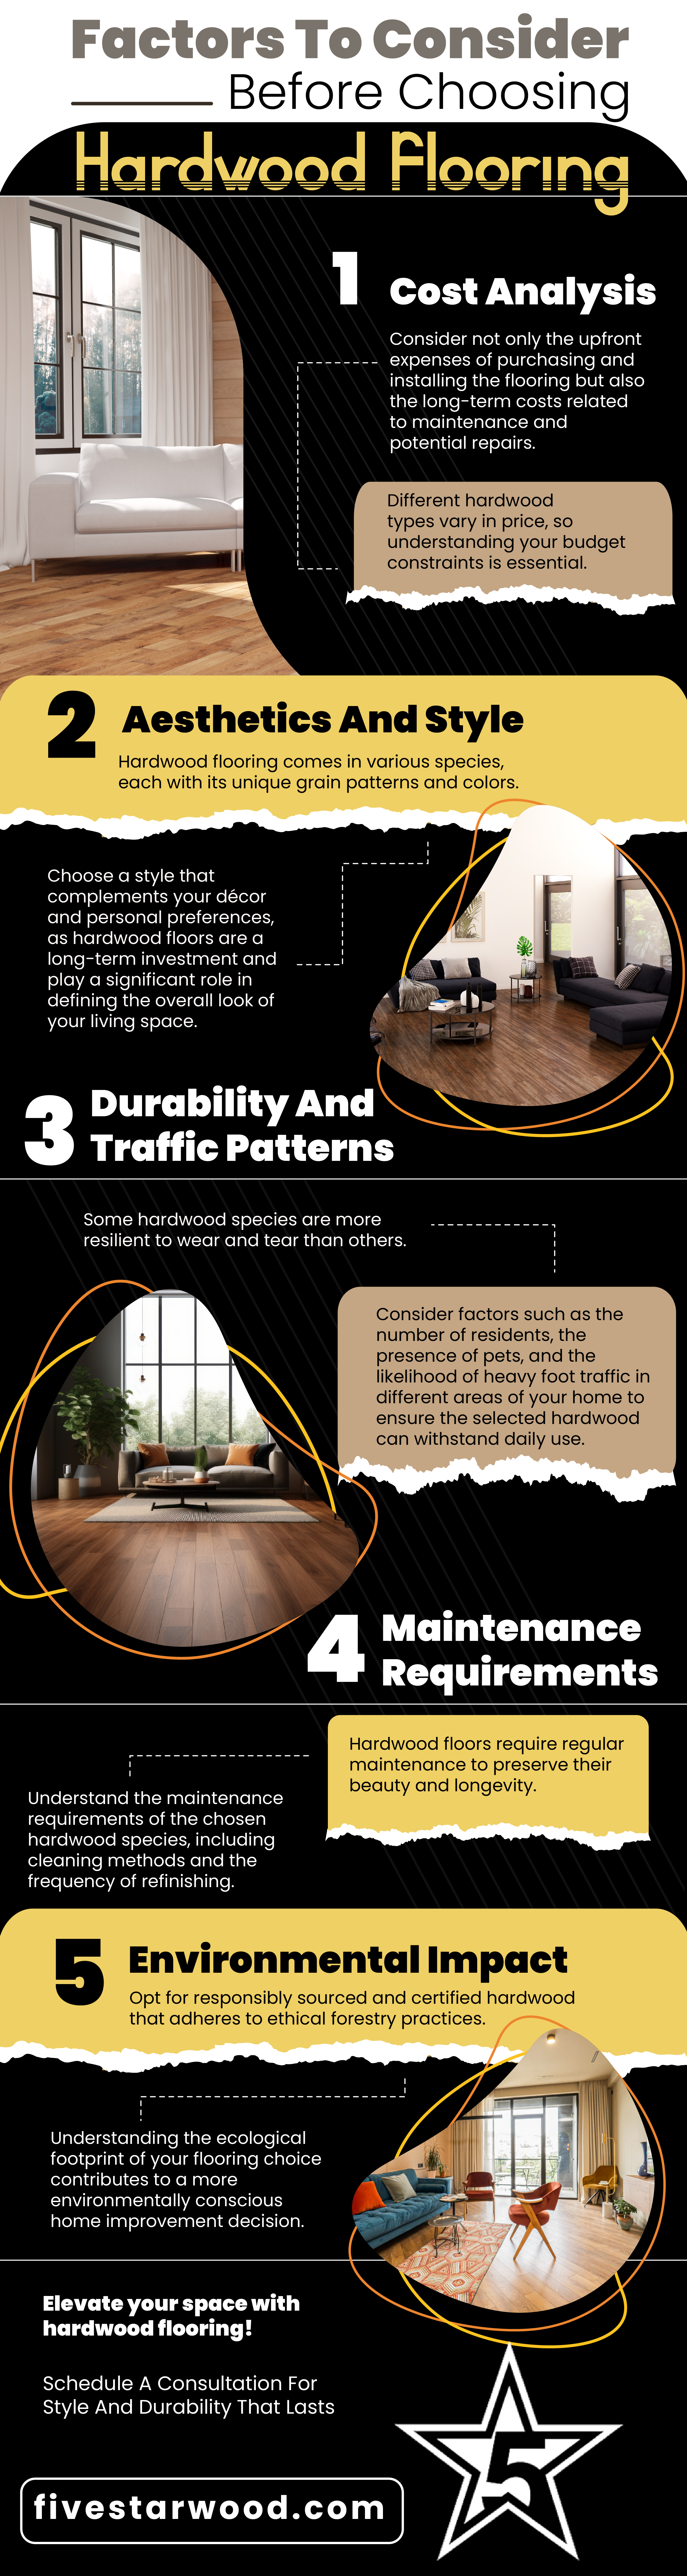 Factors To Consider Before Choosing Hardwood Flooring